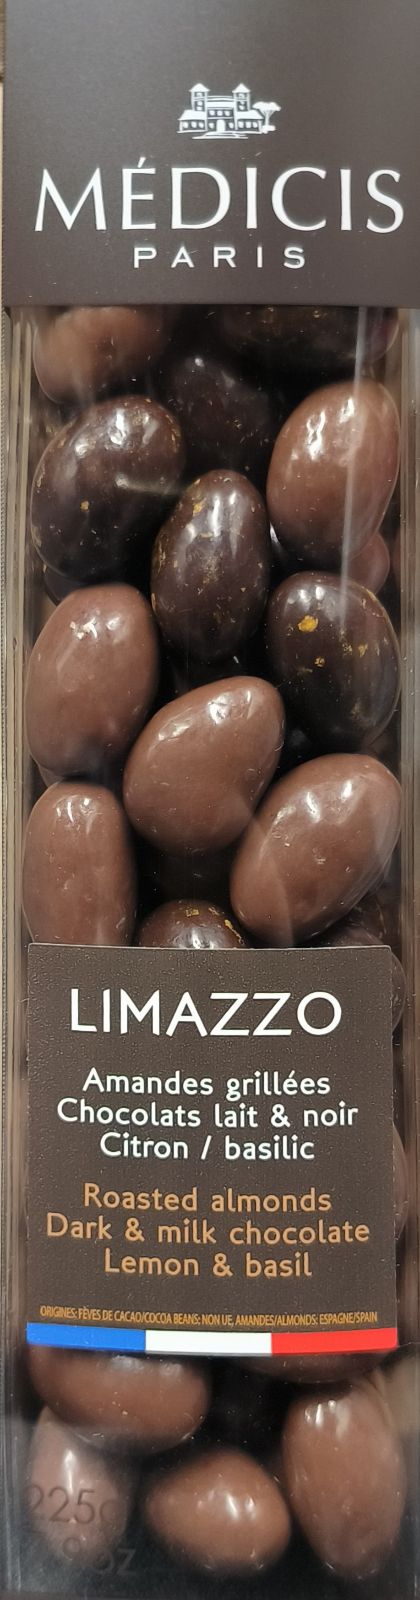 Bomboane cu migdale glazurate in 2 tipuri de ciocolata cu lamaie si busuioc - Limazzo 225g | Medicis